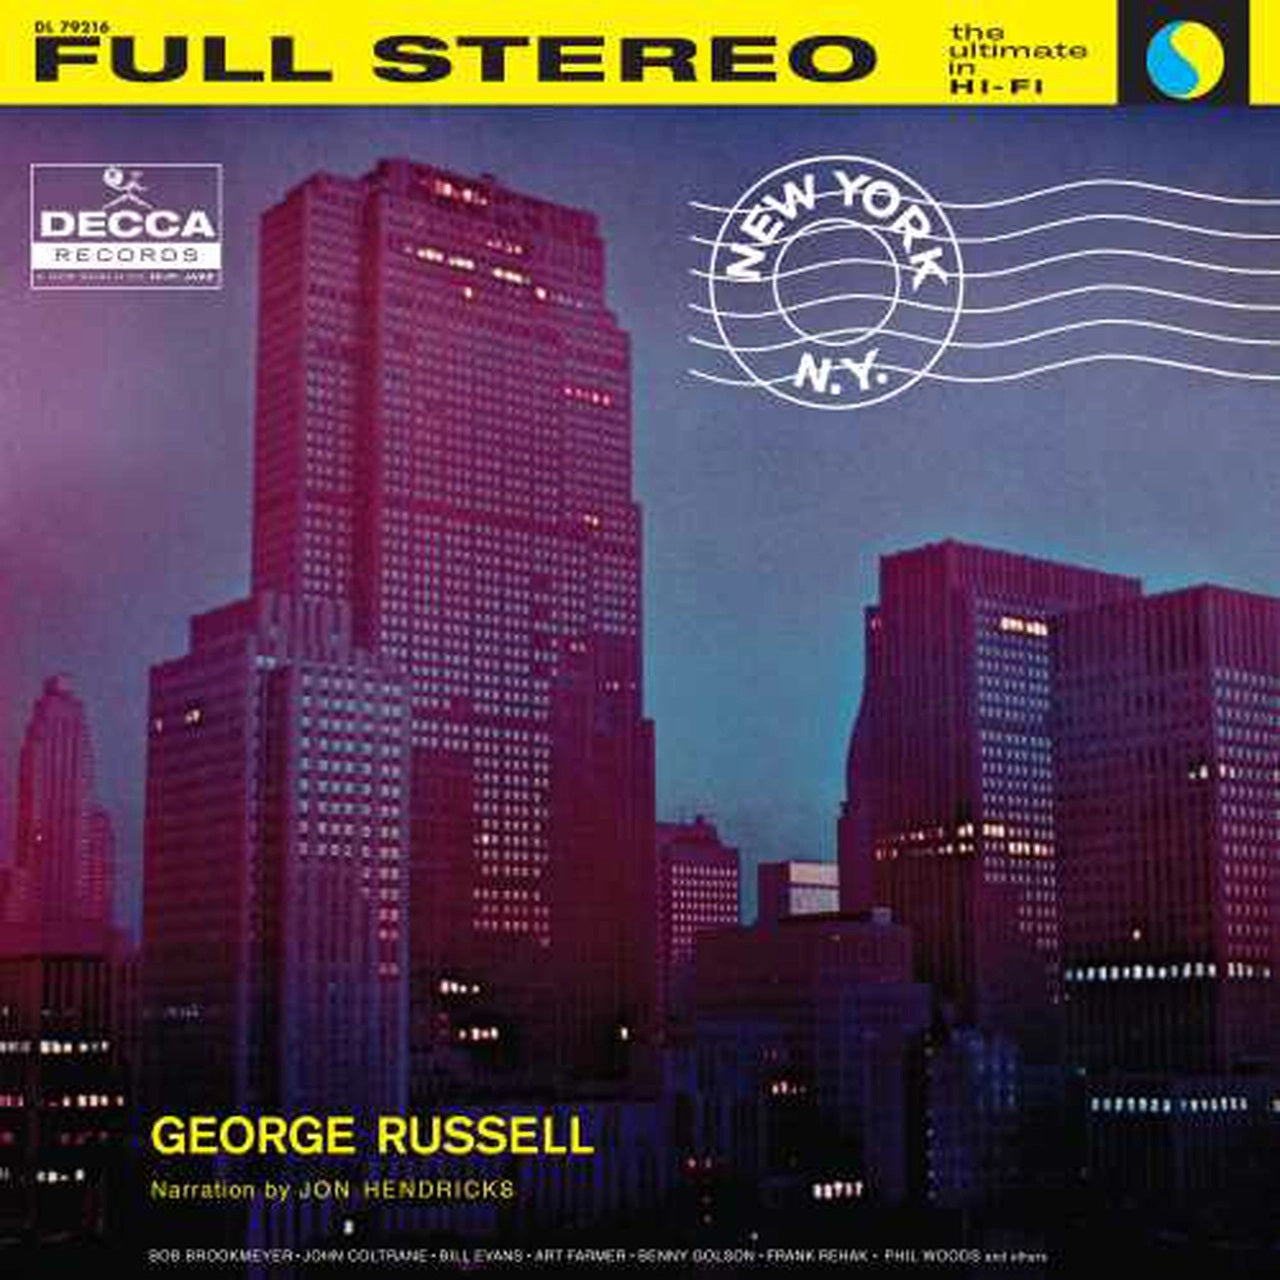 George Russell | New York, N.Y.